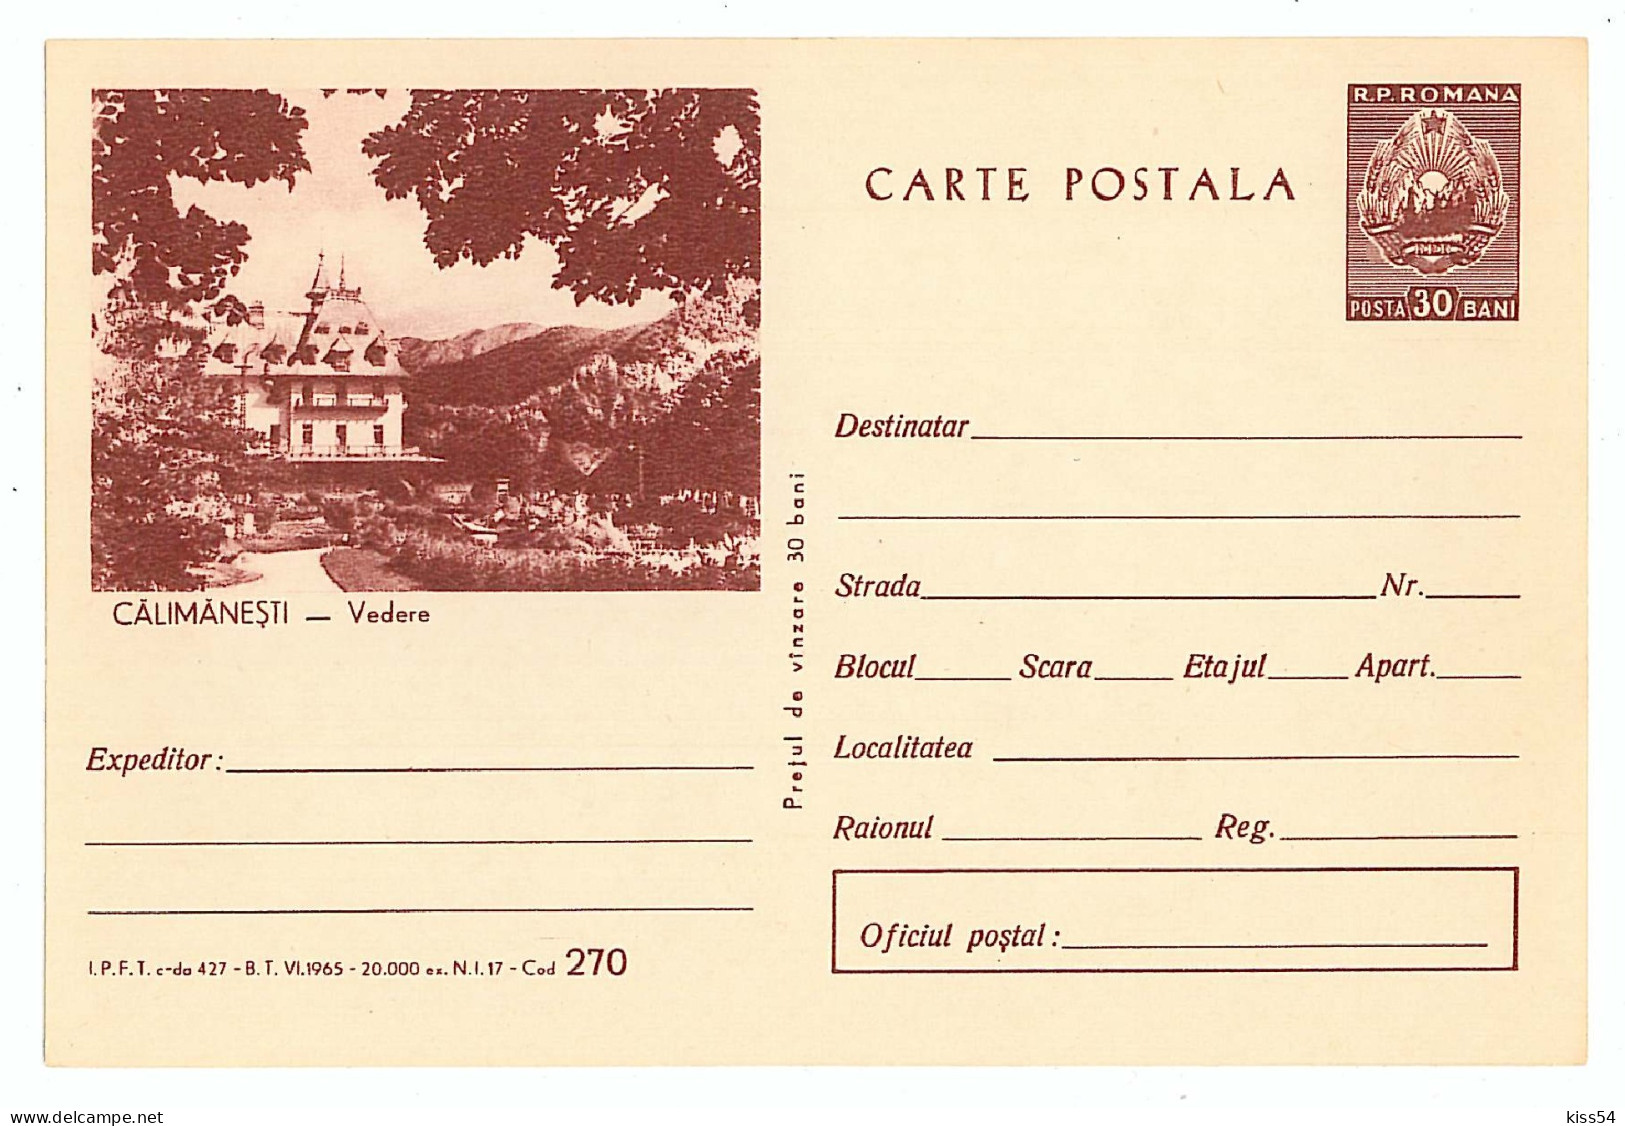 IP 65 A - 270 CALIMANESTI, Valcea, SPA, Romania - Stationery - Unused - 1965 - Postal Stationery